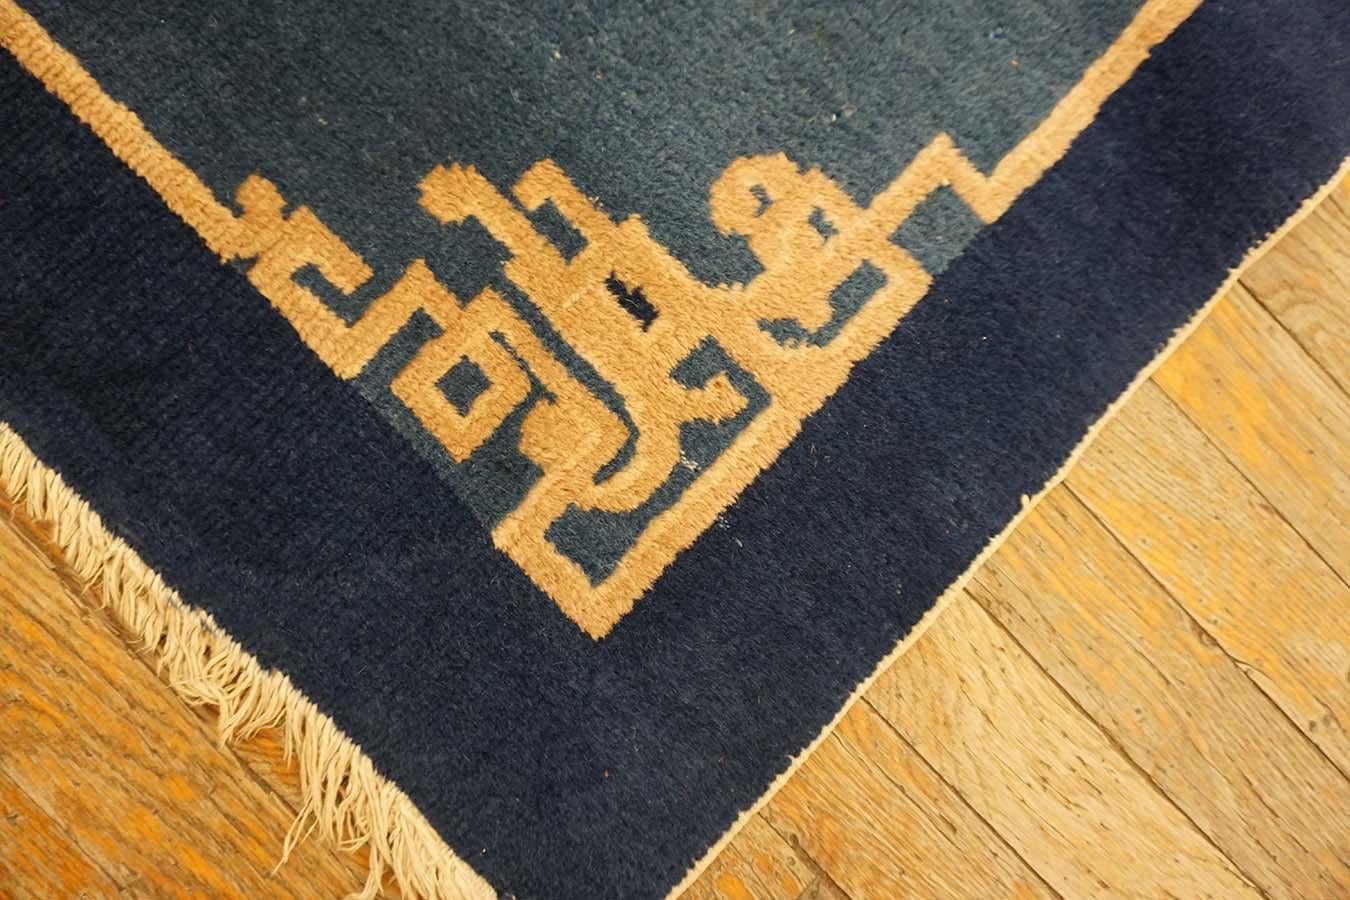 Chinesischer Art-déco-Teppich des frühen 20. Jahrhunderts ( 3' x 4'8